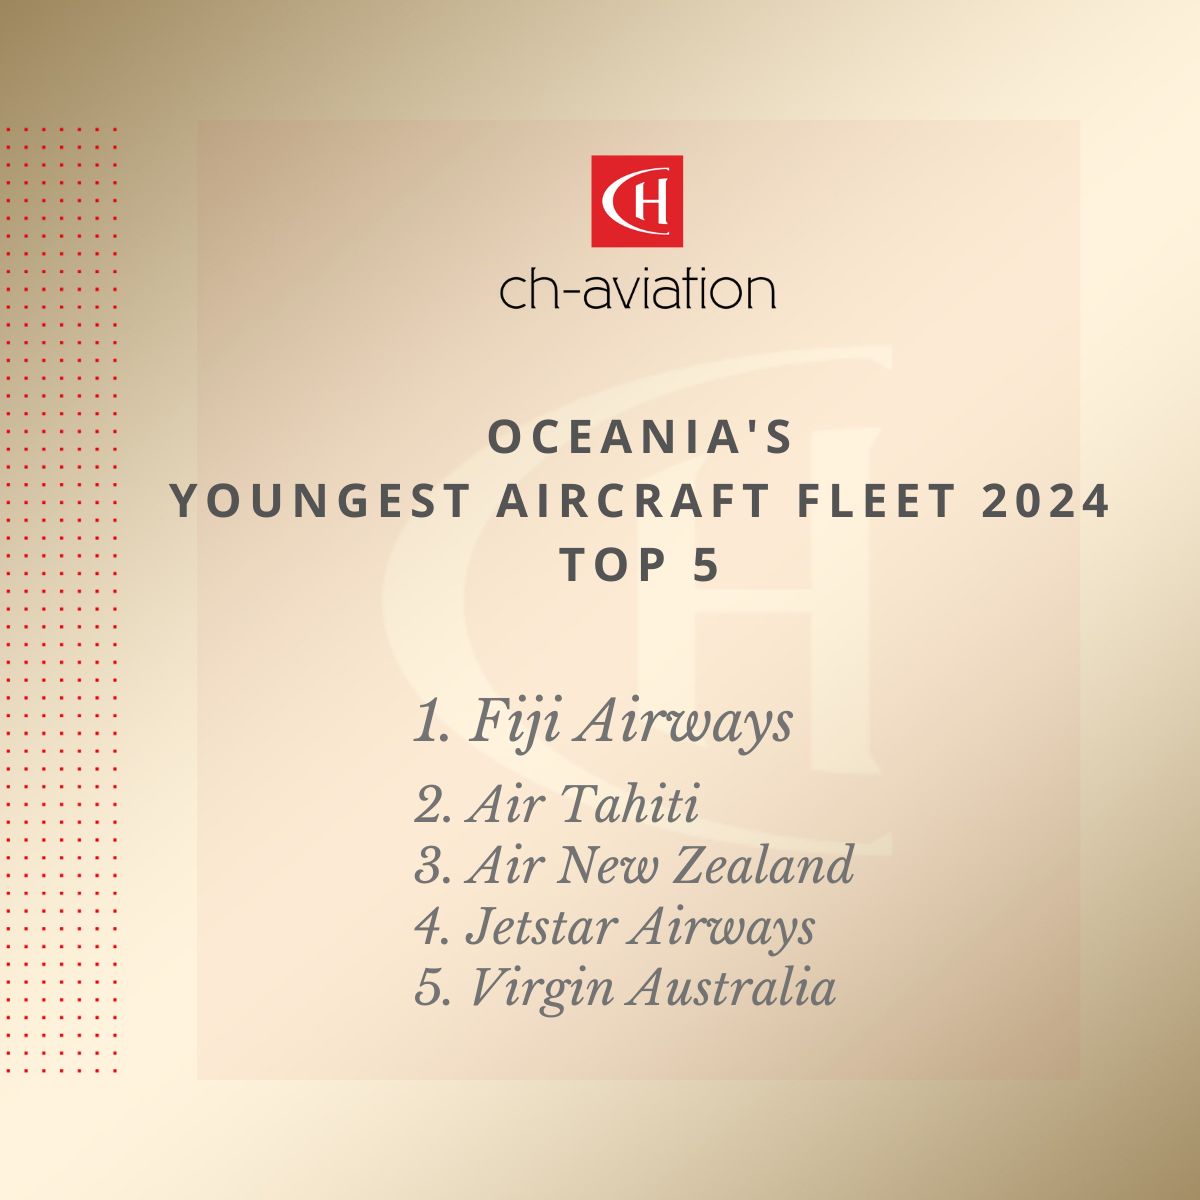 Oceania youngest aircraft fleet award 2024